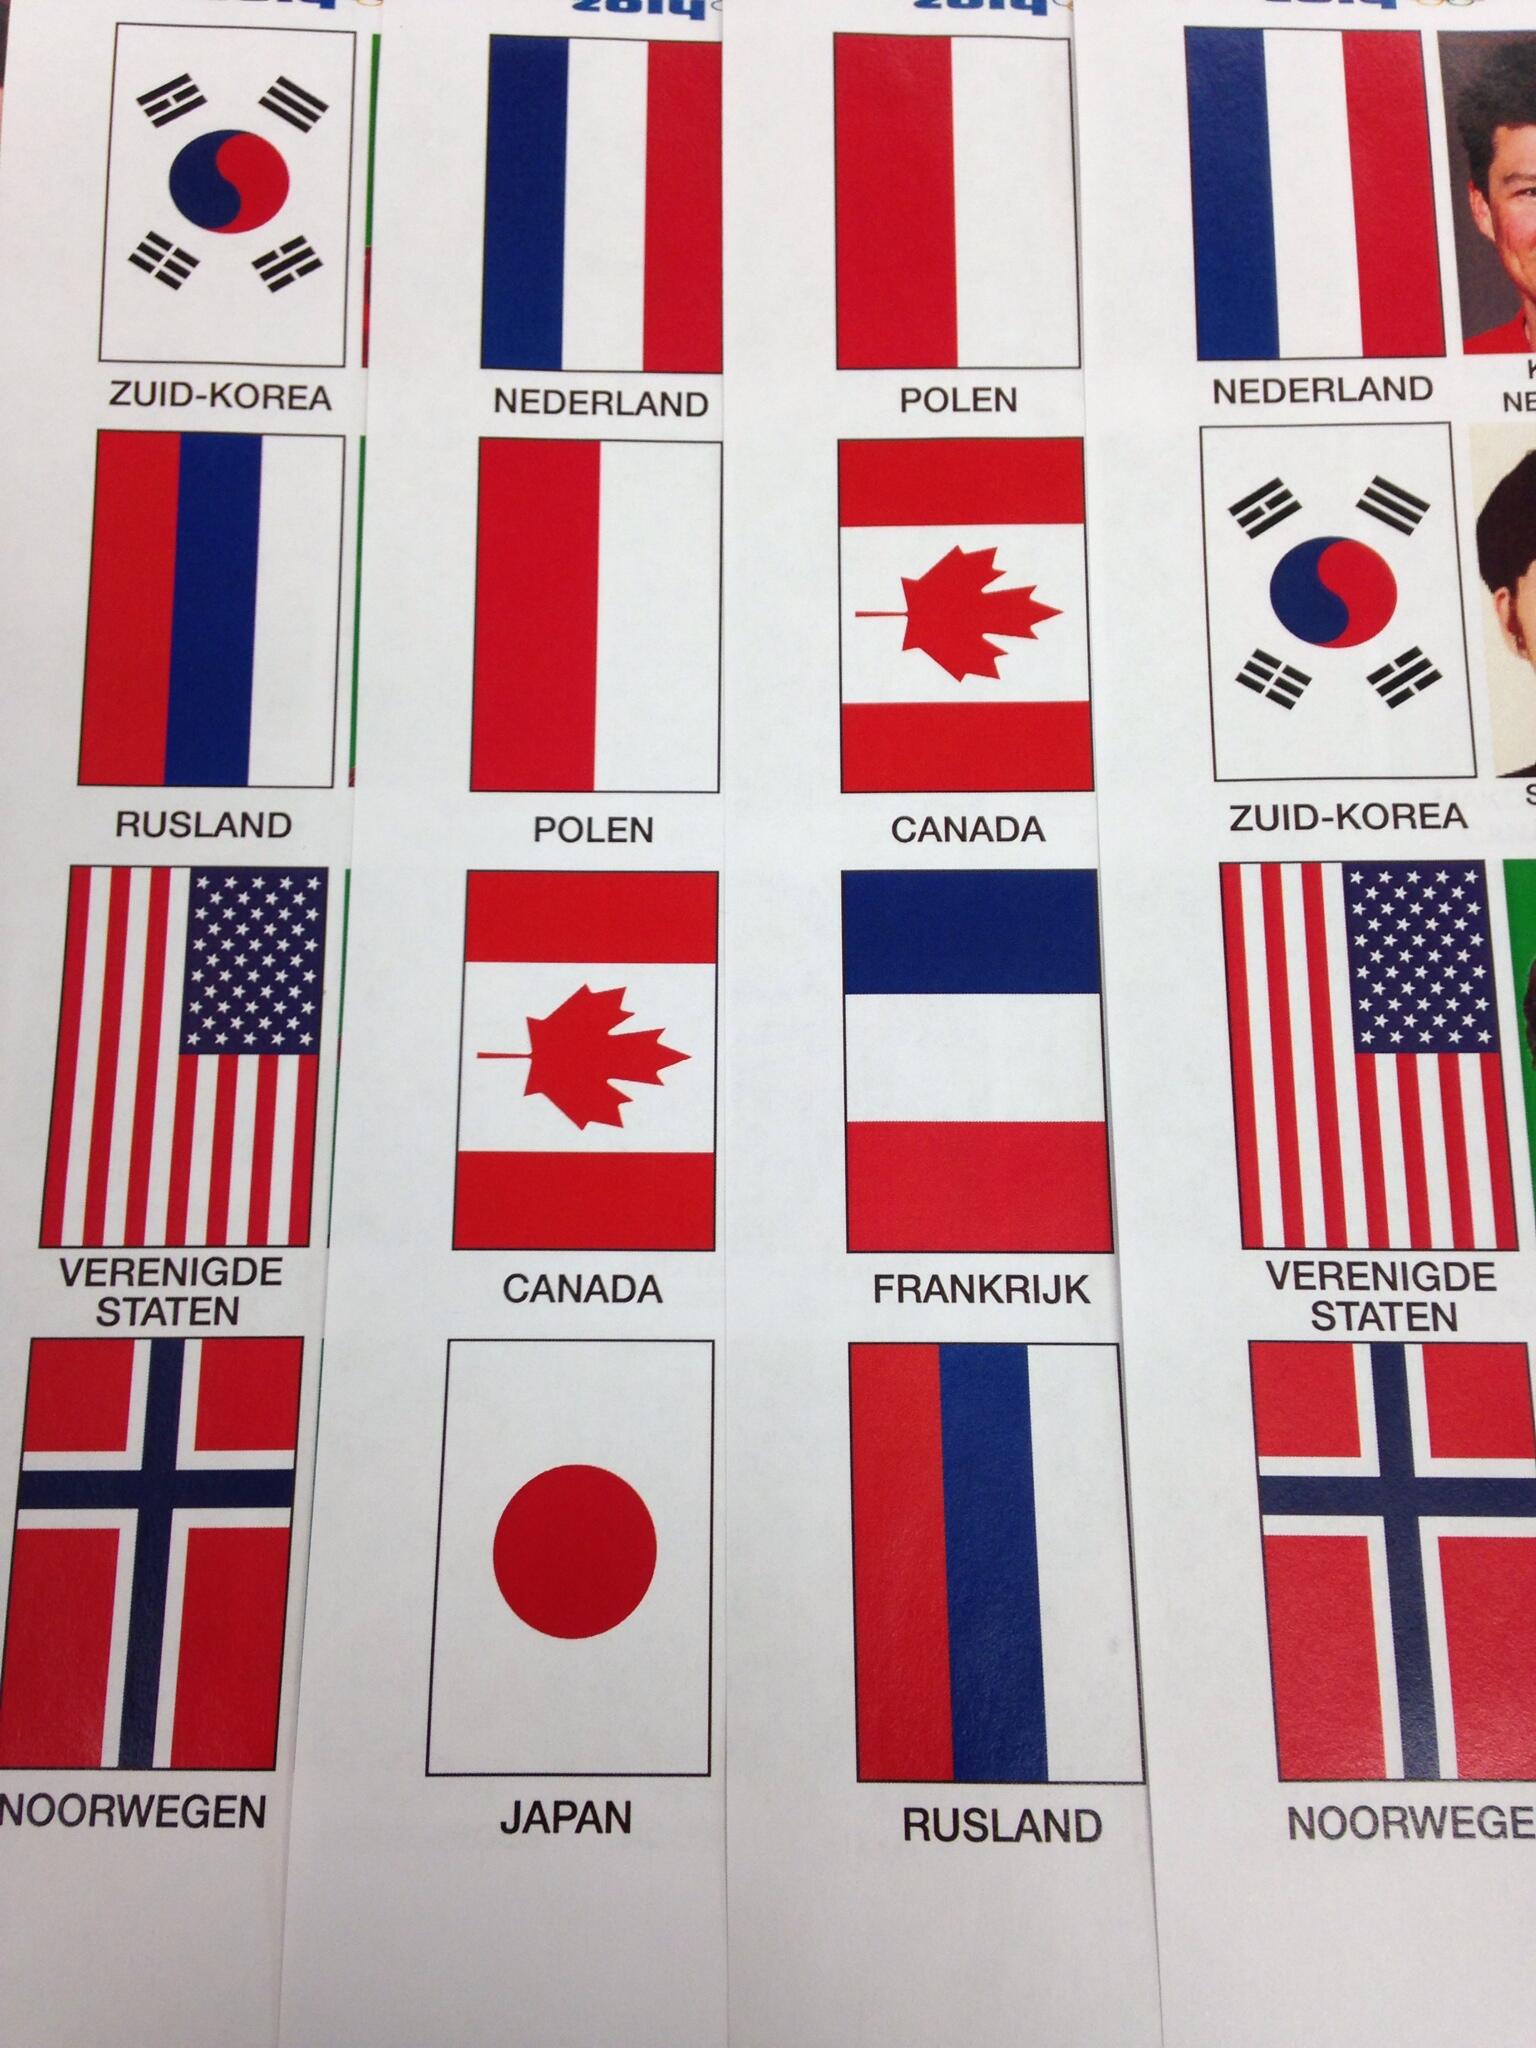 Robbert de Rijk on Twitter: je rood-wit-blauw in je vlag hebt kom je schaatsen al een heel eind. De deelnemende landen aan de TP. http://t.co/4BJnZ73d1g" / Twitter